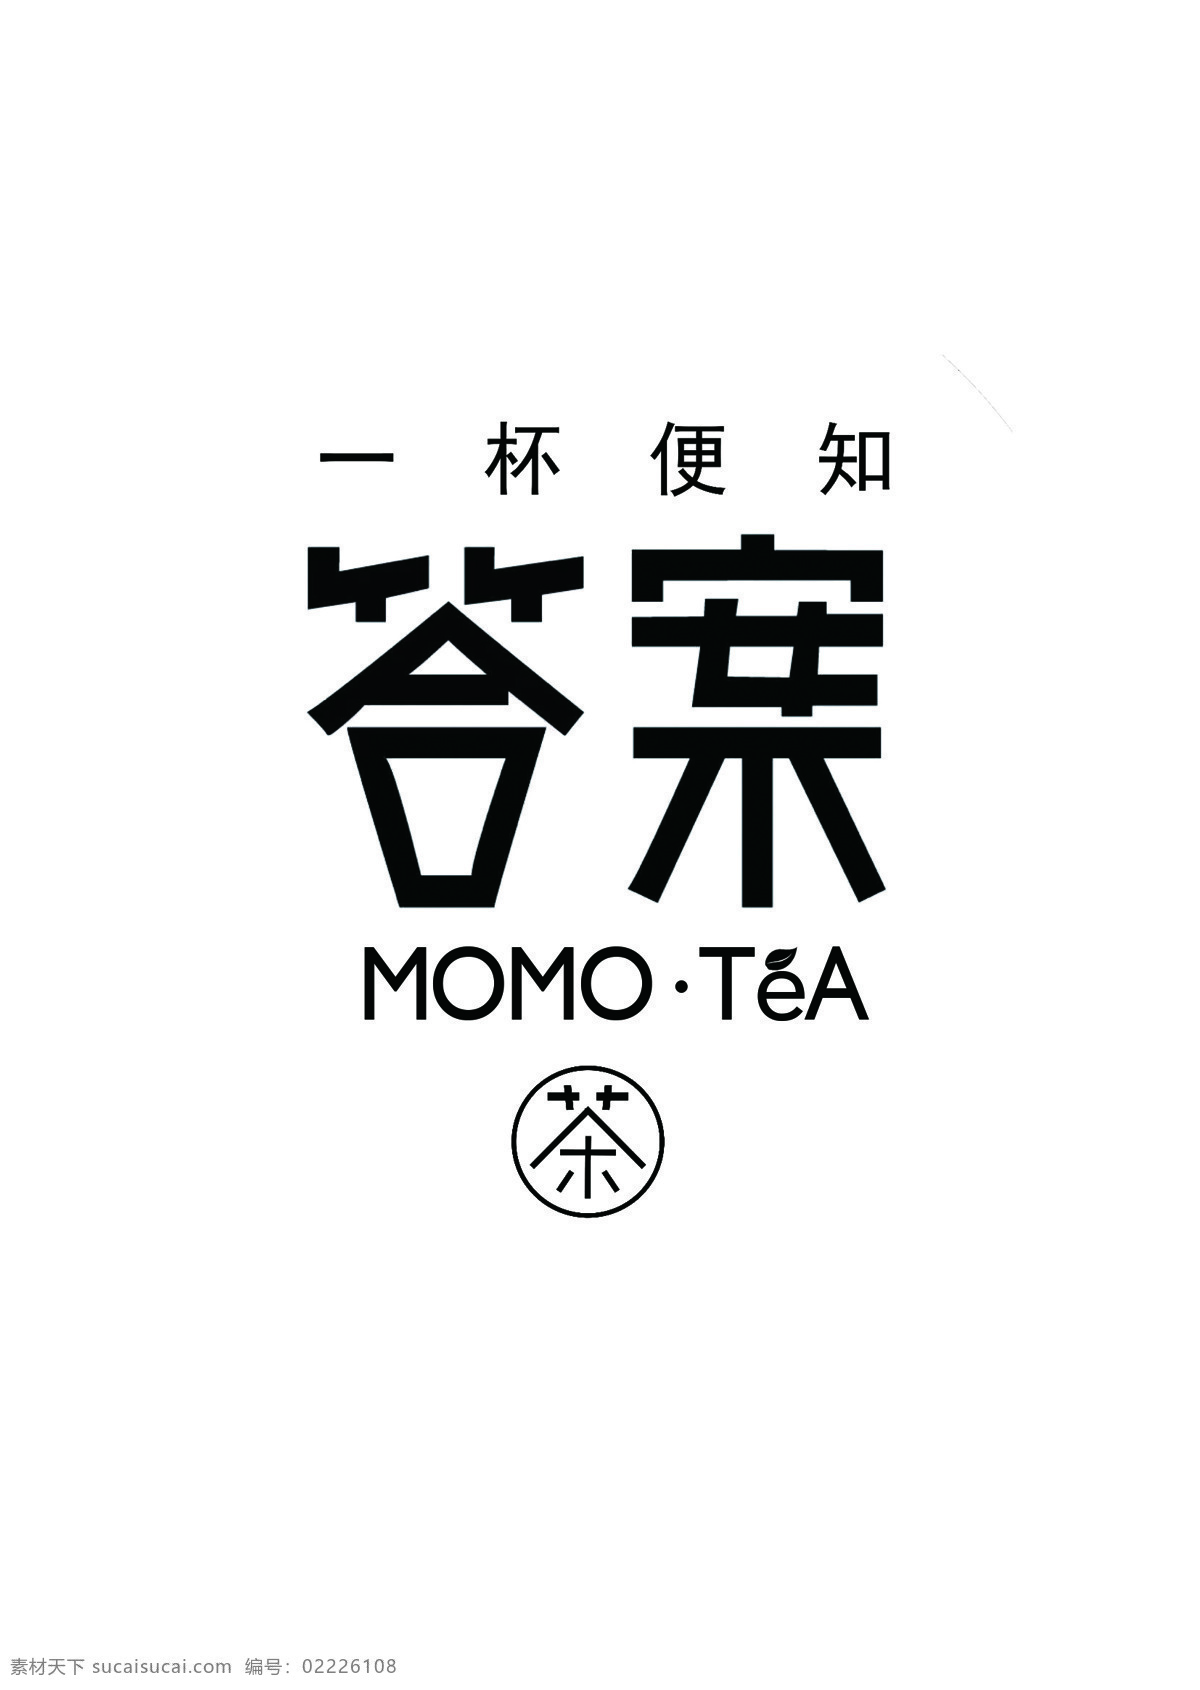 答案茶 logo 答案 一杯便知 标志图标 企业 标志